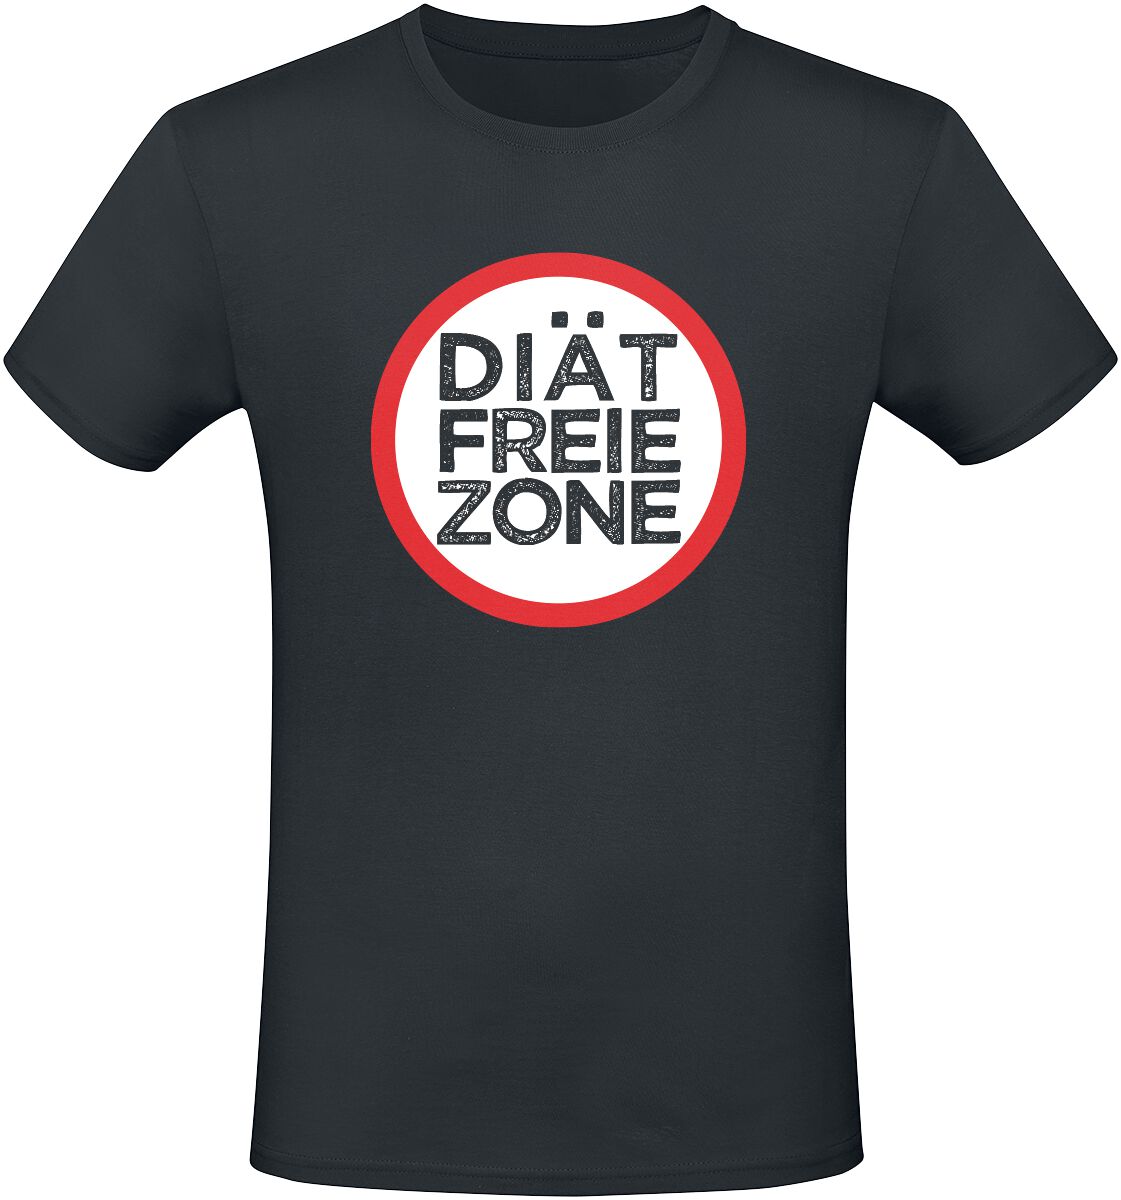 Food Diätfreie Zone T-Shirt schwarz in M